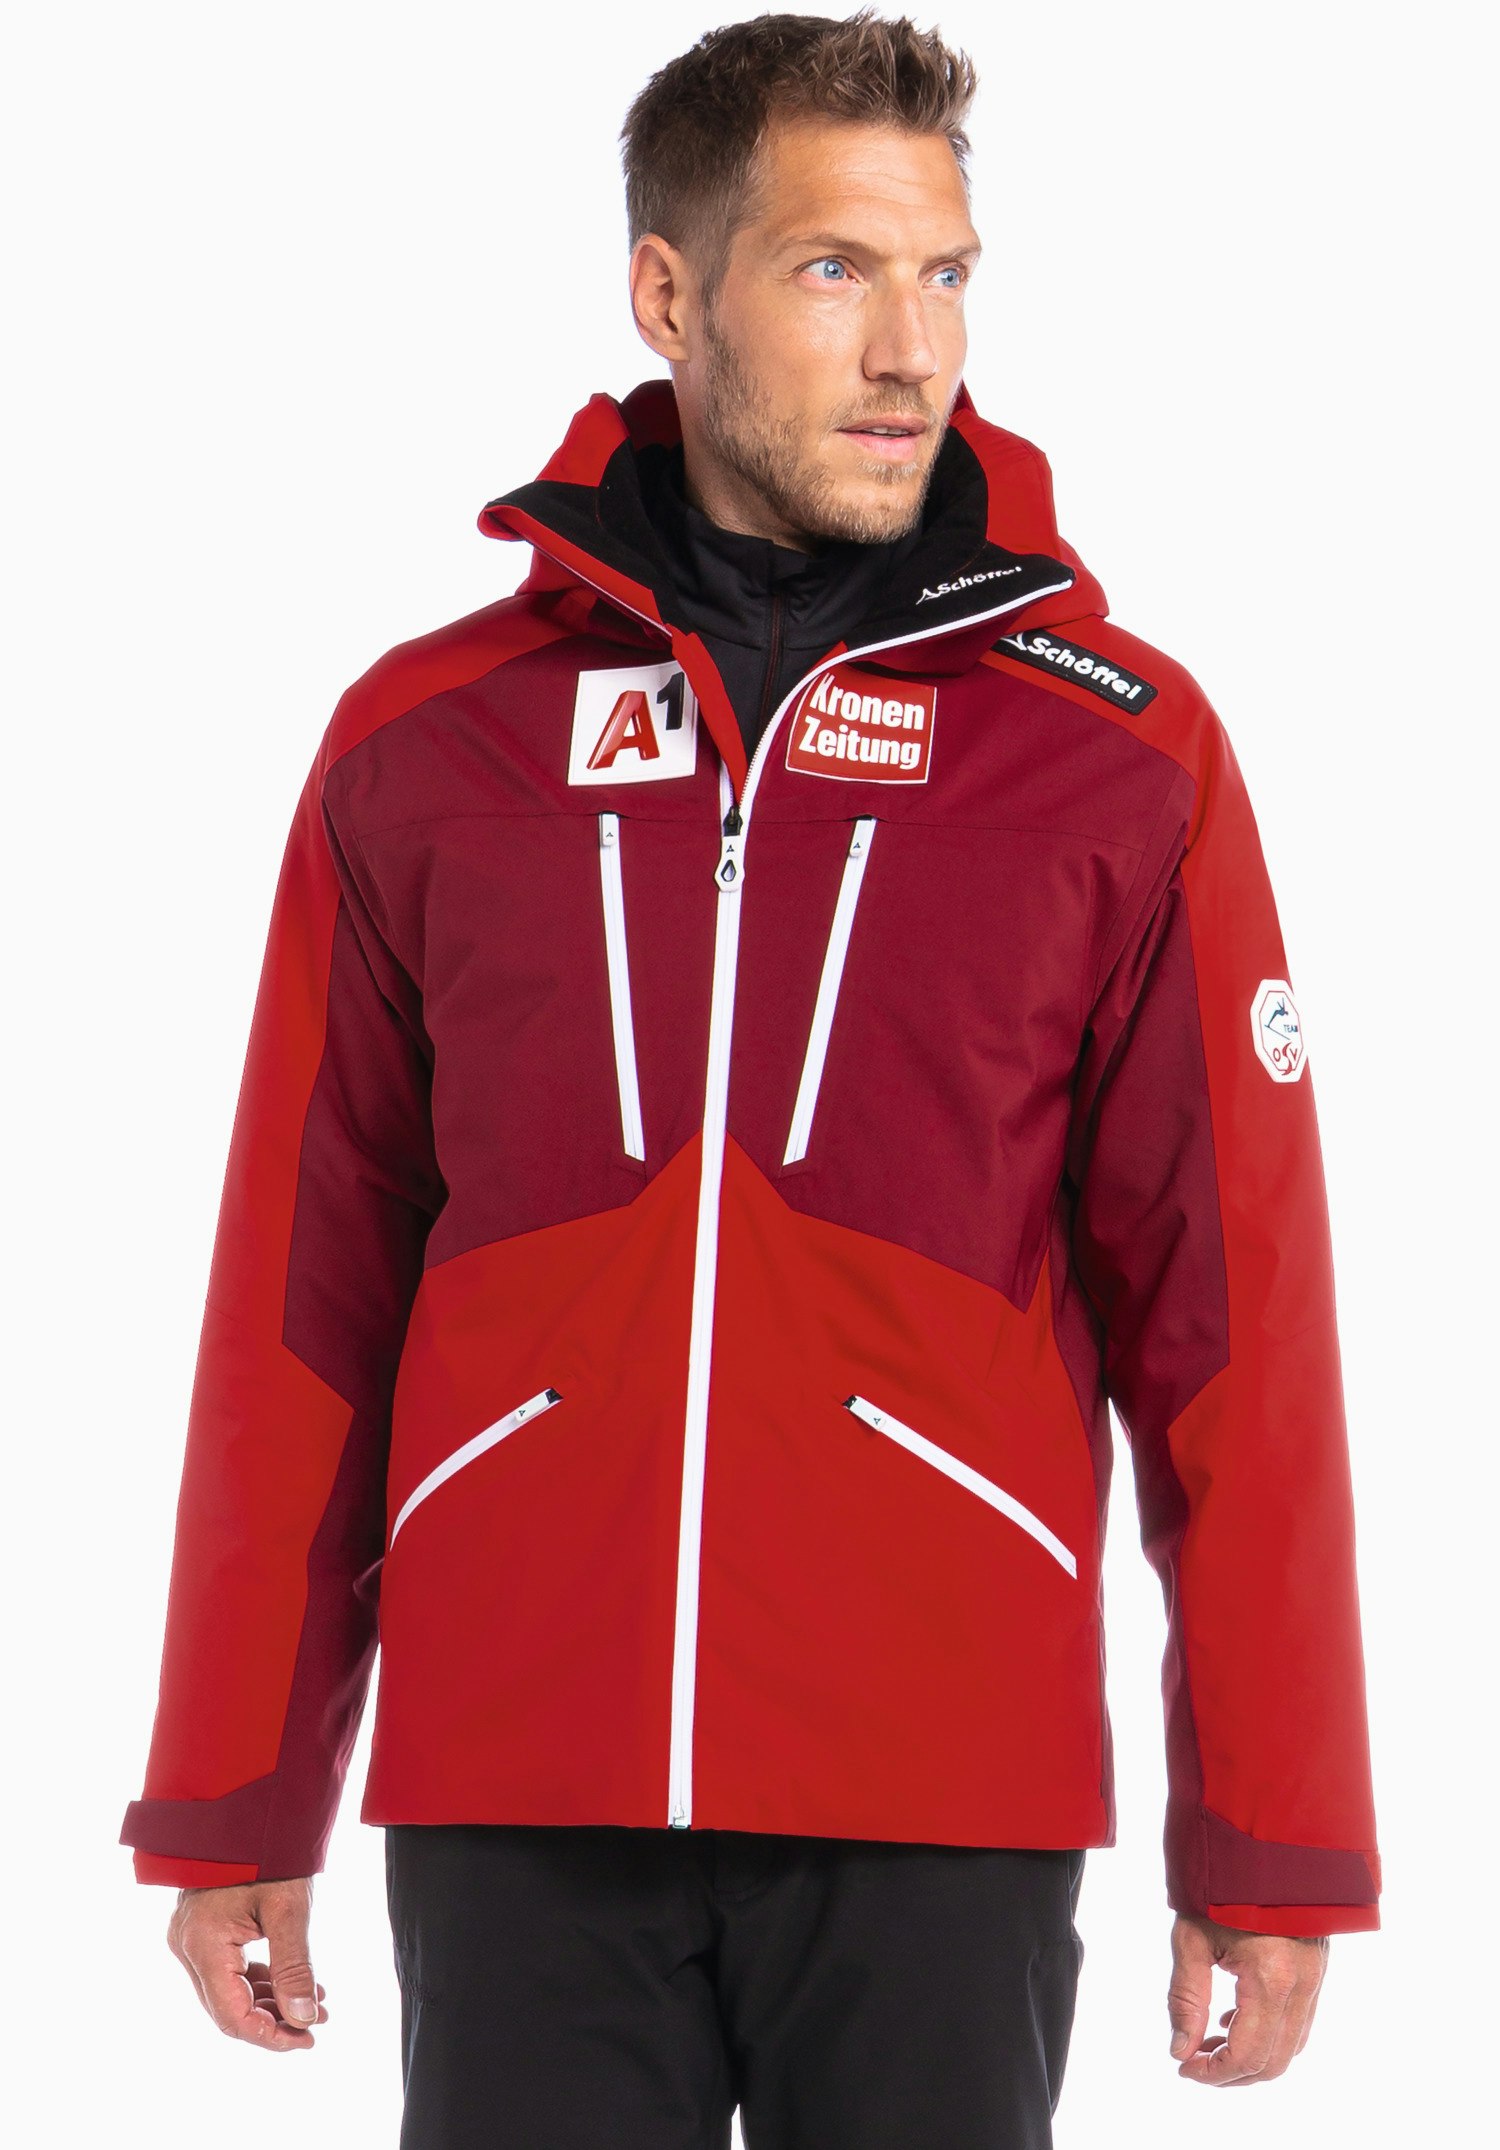 Schöffel Ski Jacket Lachaux M Herren Skijacke Wintersport Outdoor blau/rot NEU b 